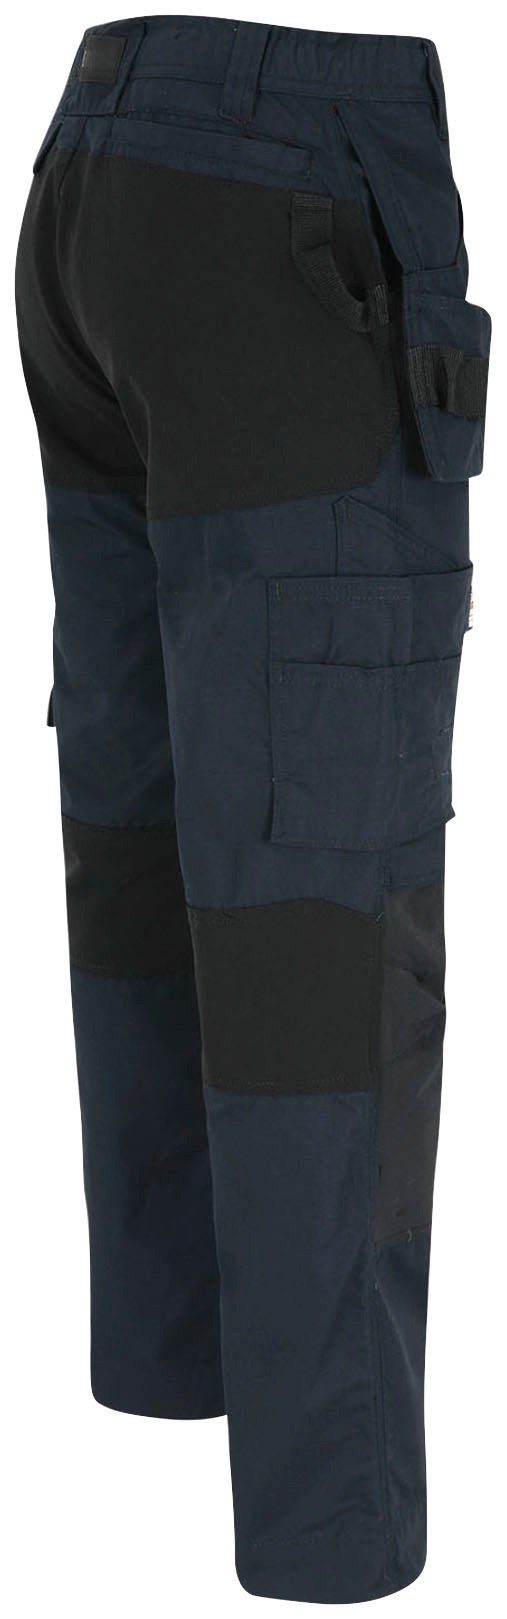 mit 4-Wege-Stretch-Teilen Arbeitshose Multi-Pocket-Hose Spector 2 marine festen Nageltaschen und Hose Herock